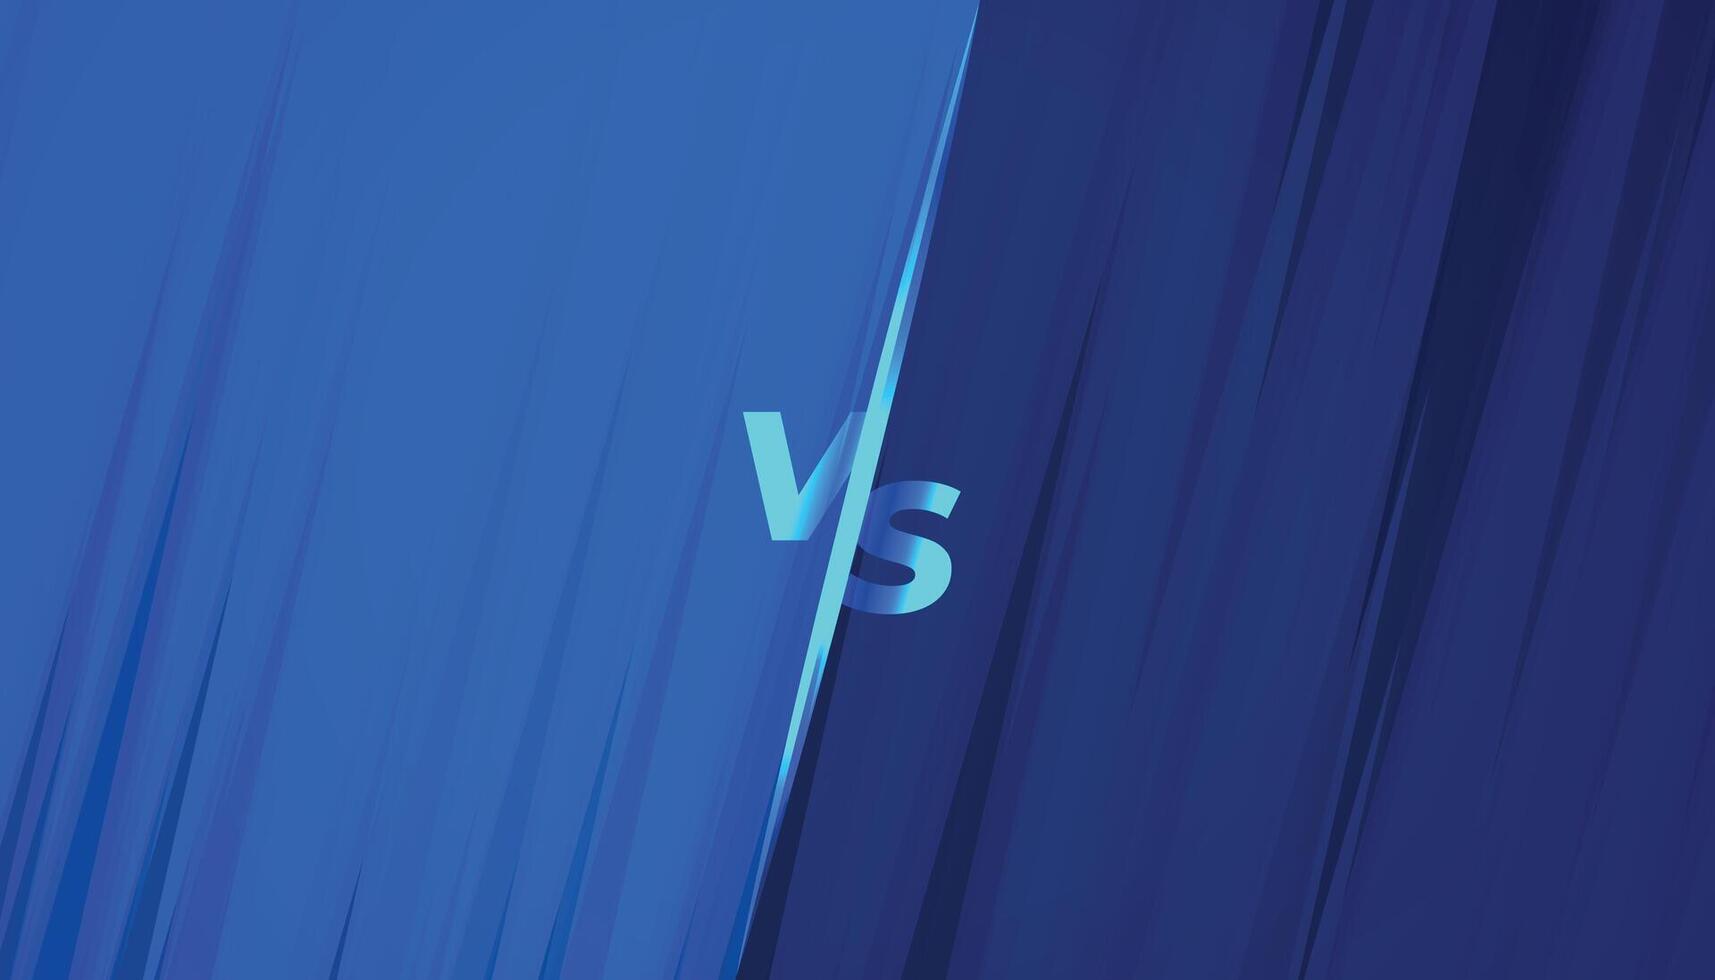 Blau gegen vs. Banner zum Wettbewerb und Herausforderung vektor